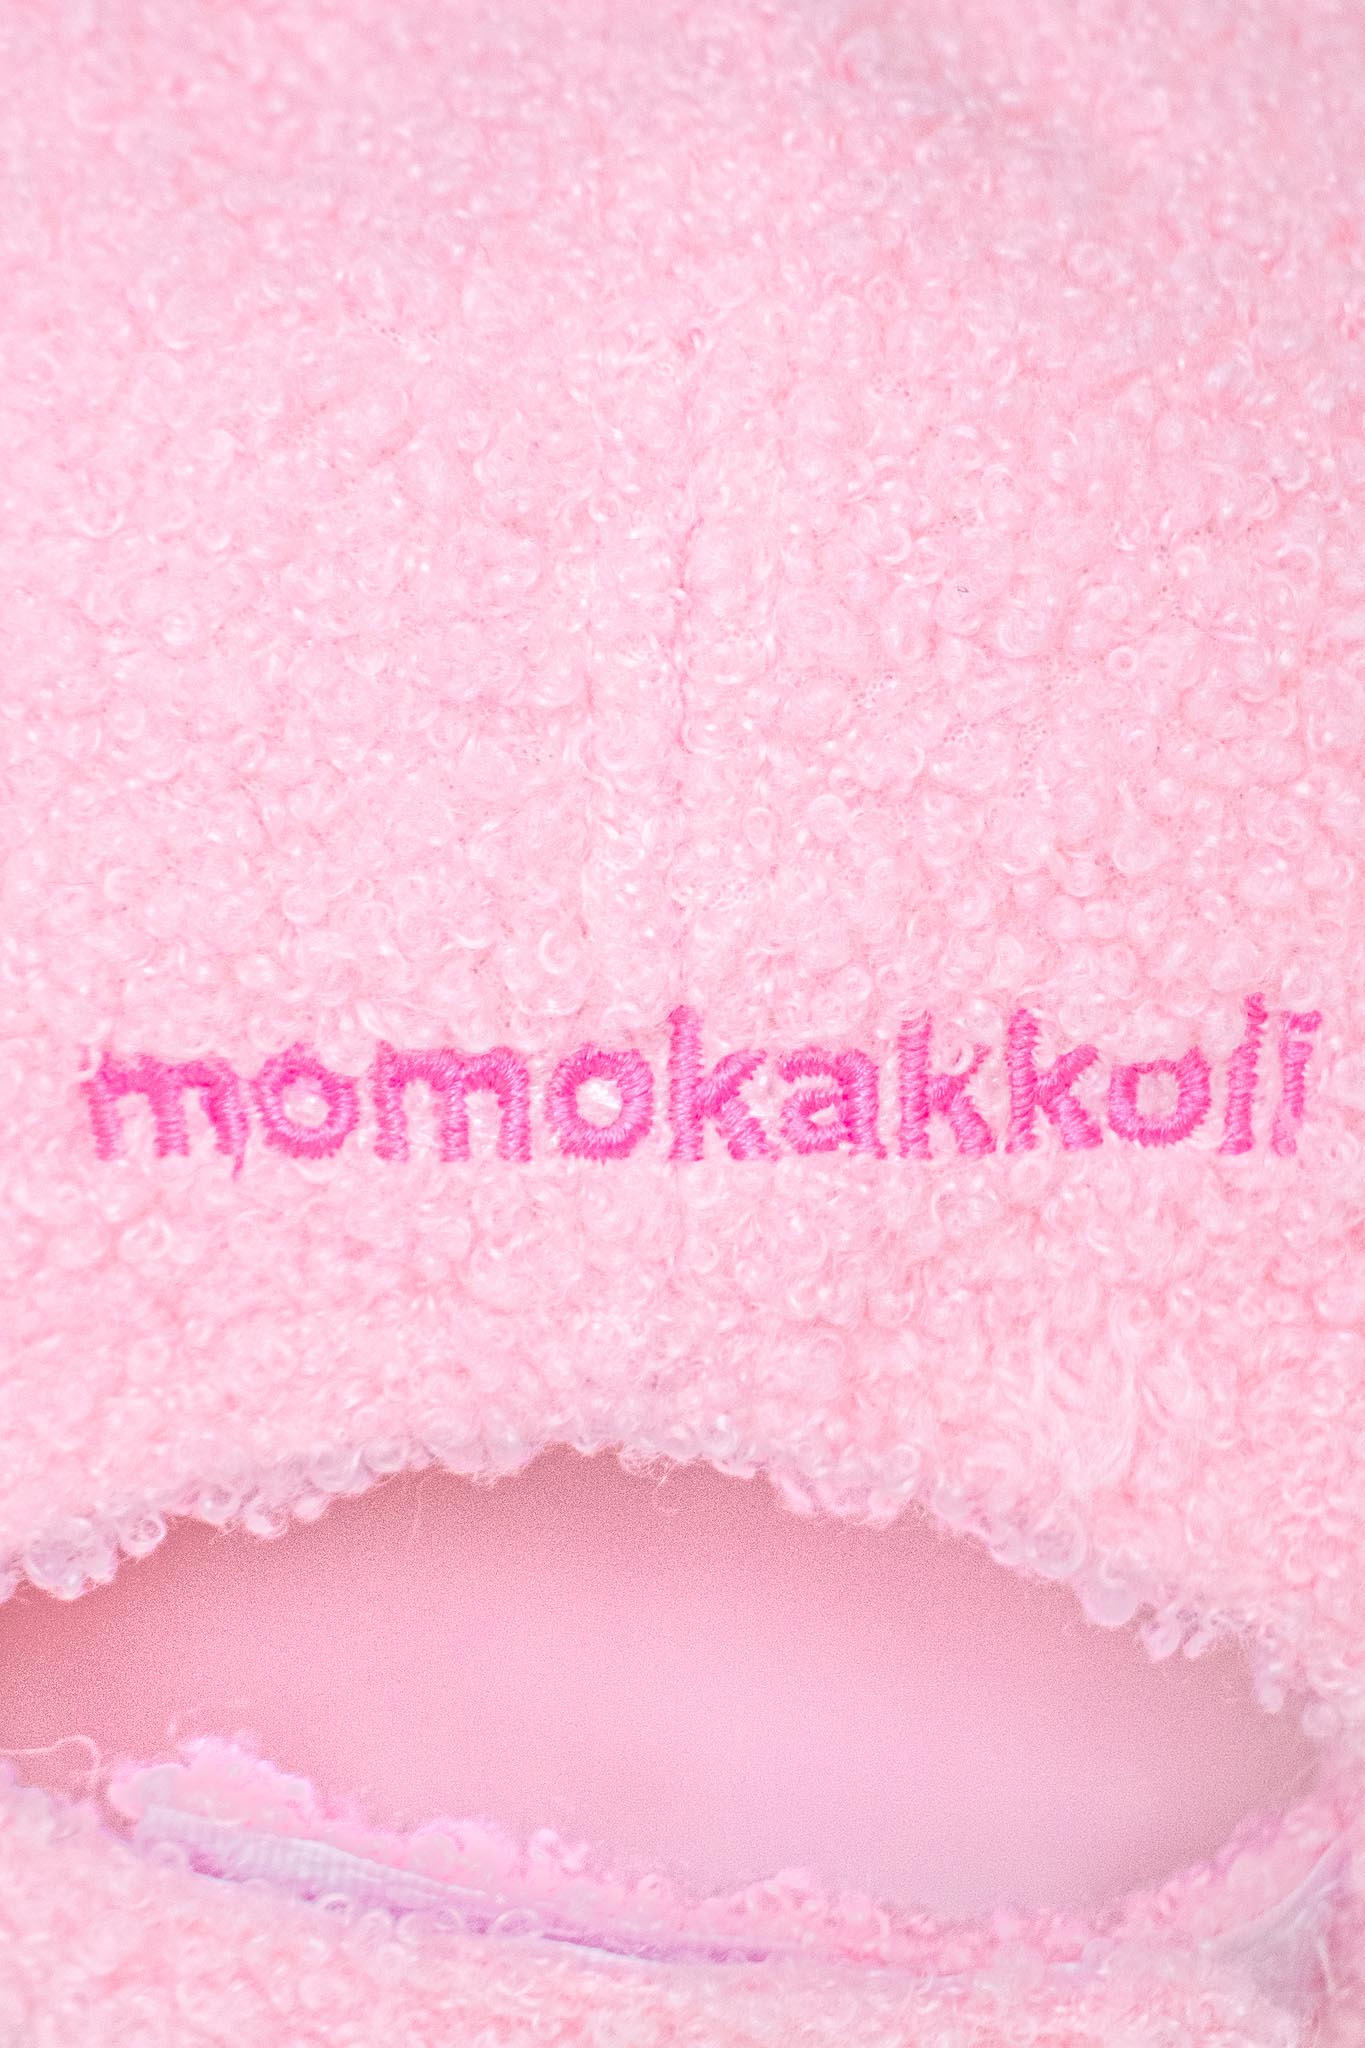 Xoxi The Axolotl Wink Embroidered Fluffy Cap - Momokakkoii